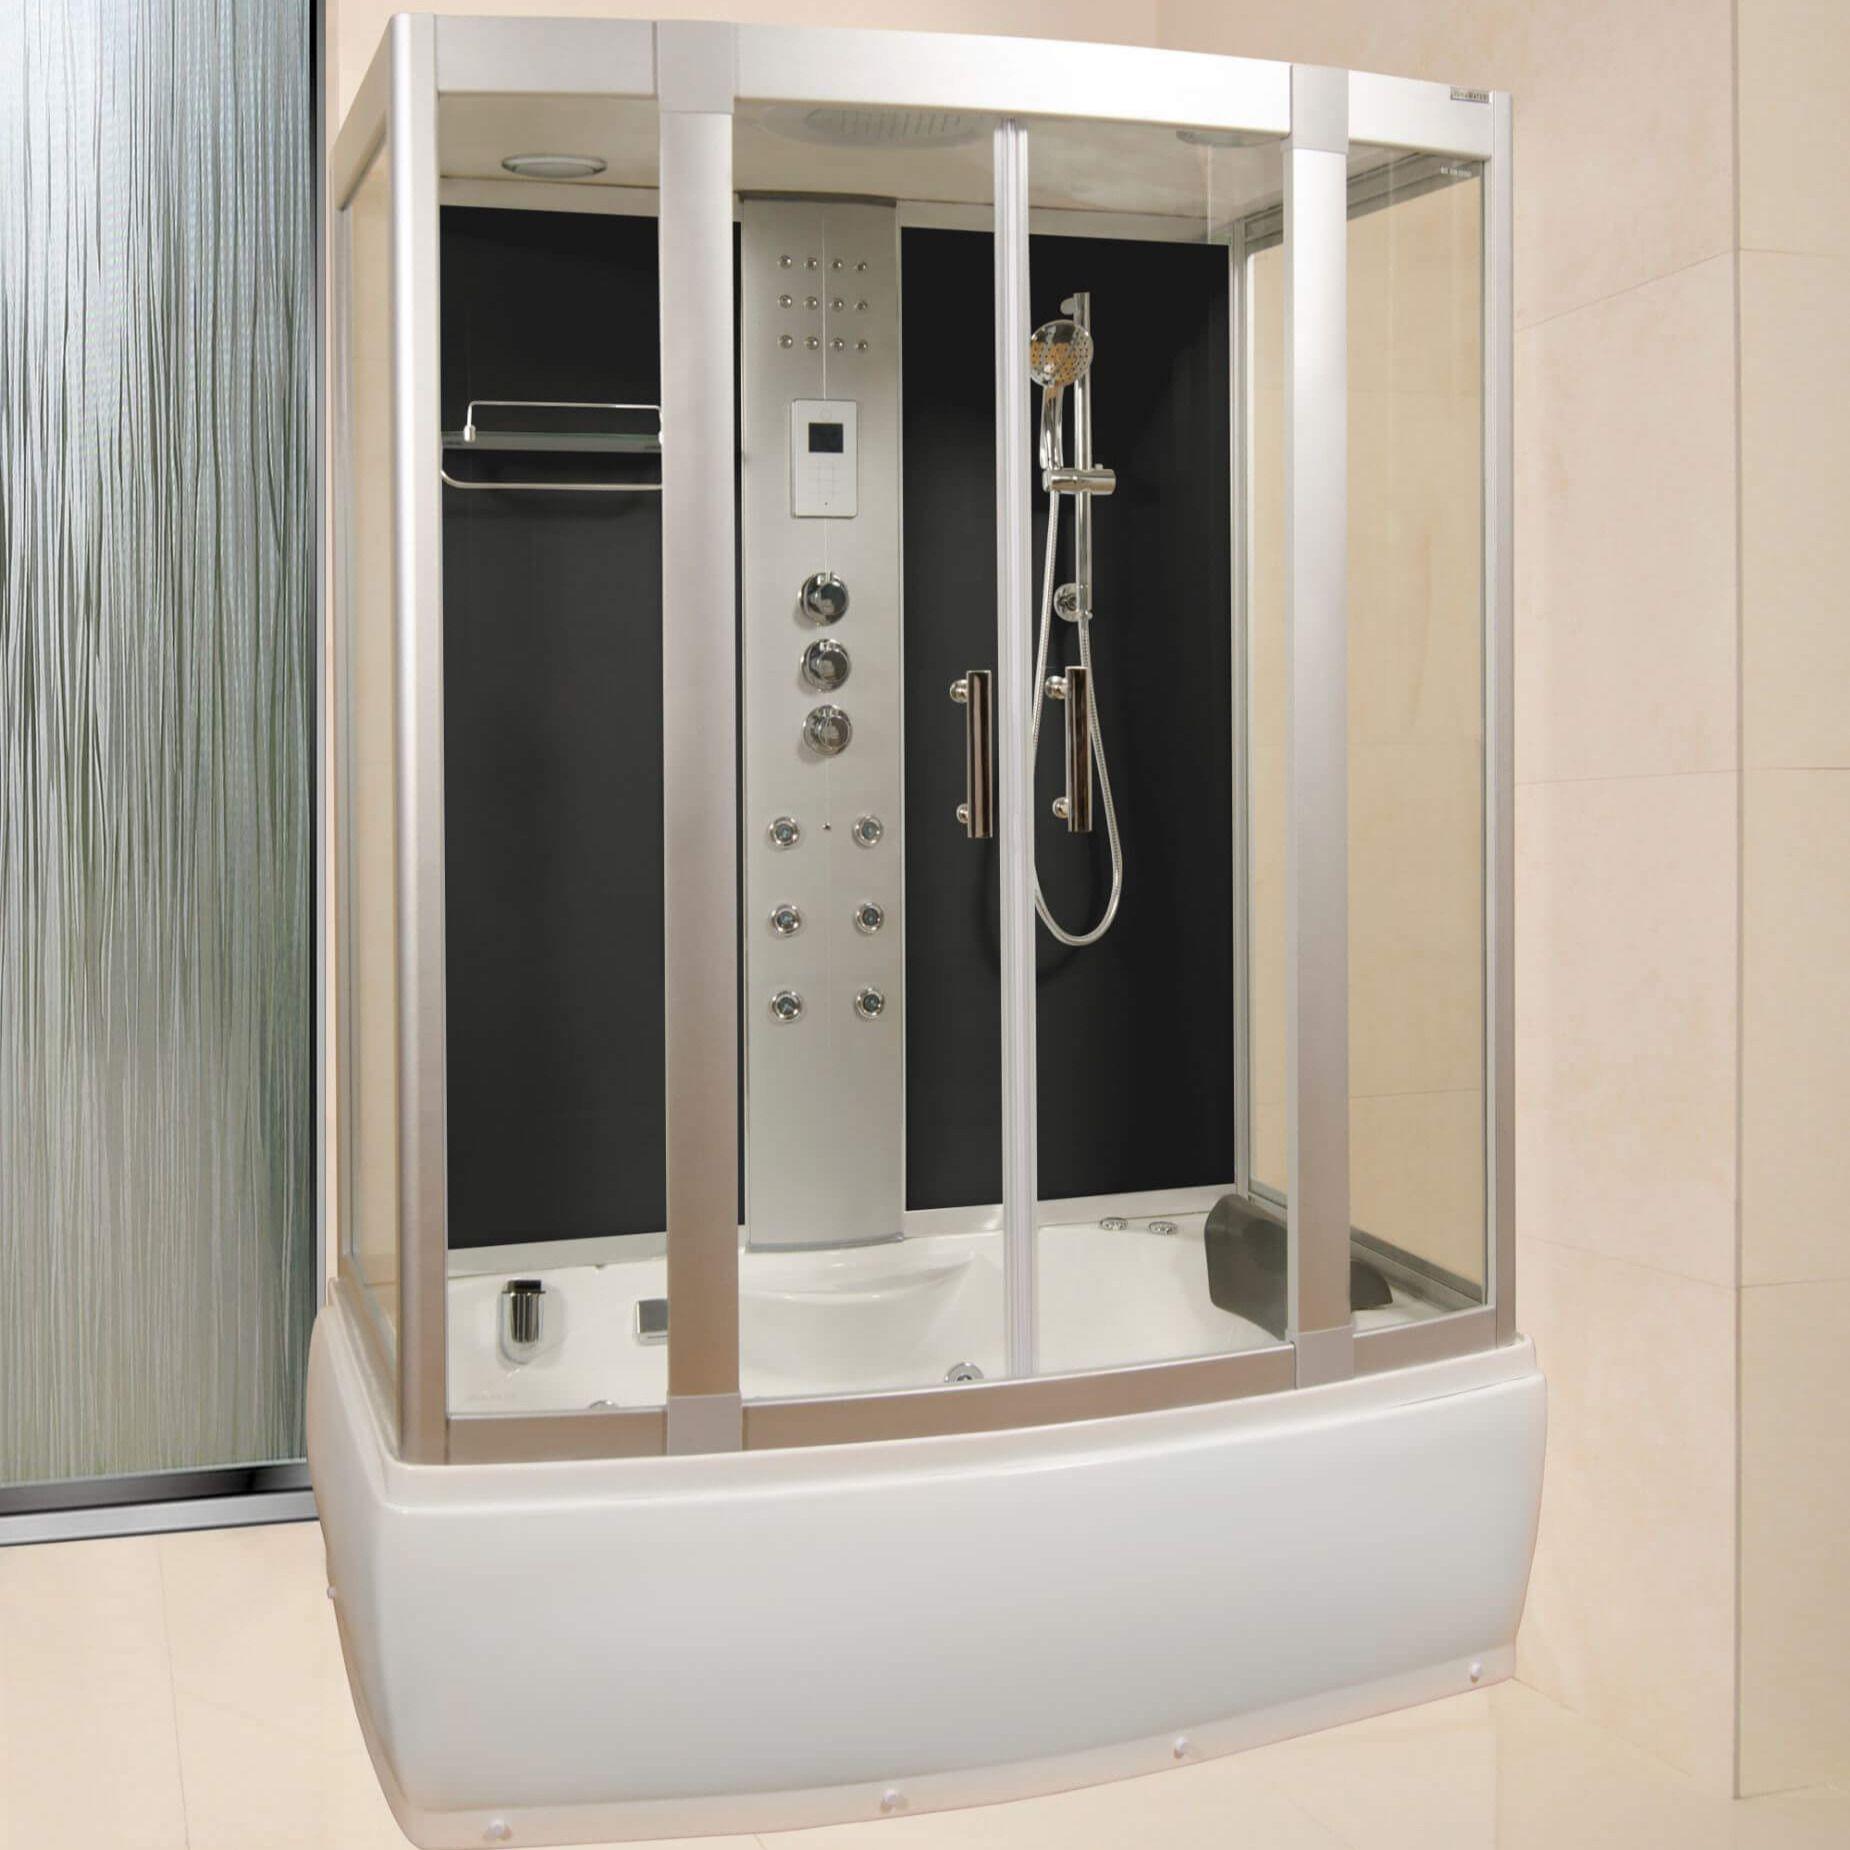 steam shower system